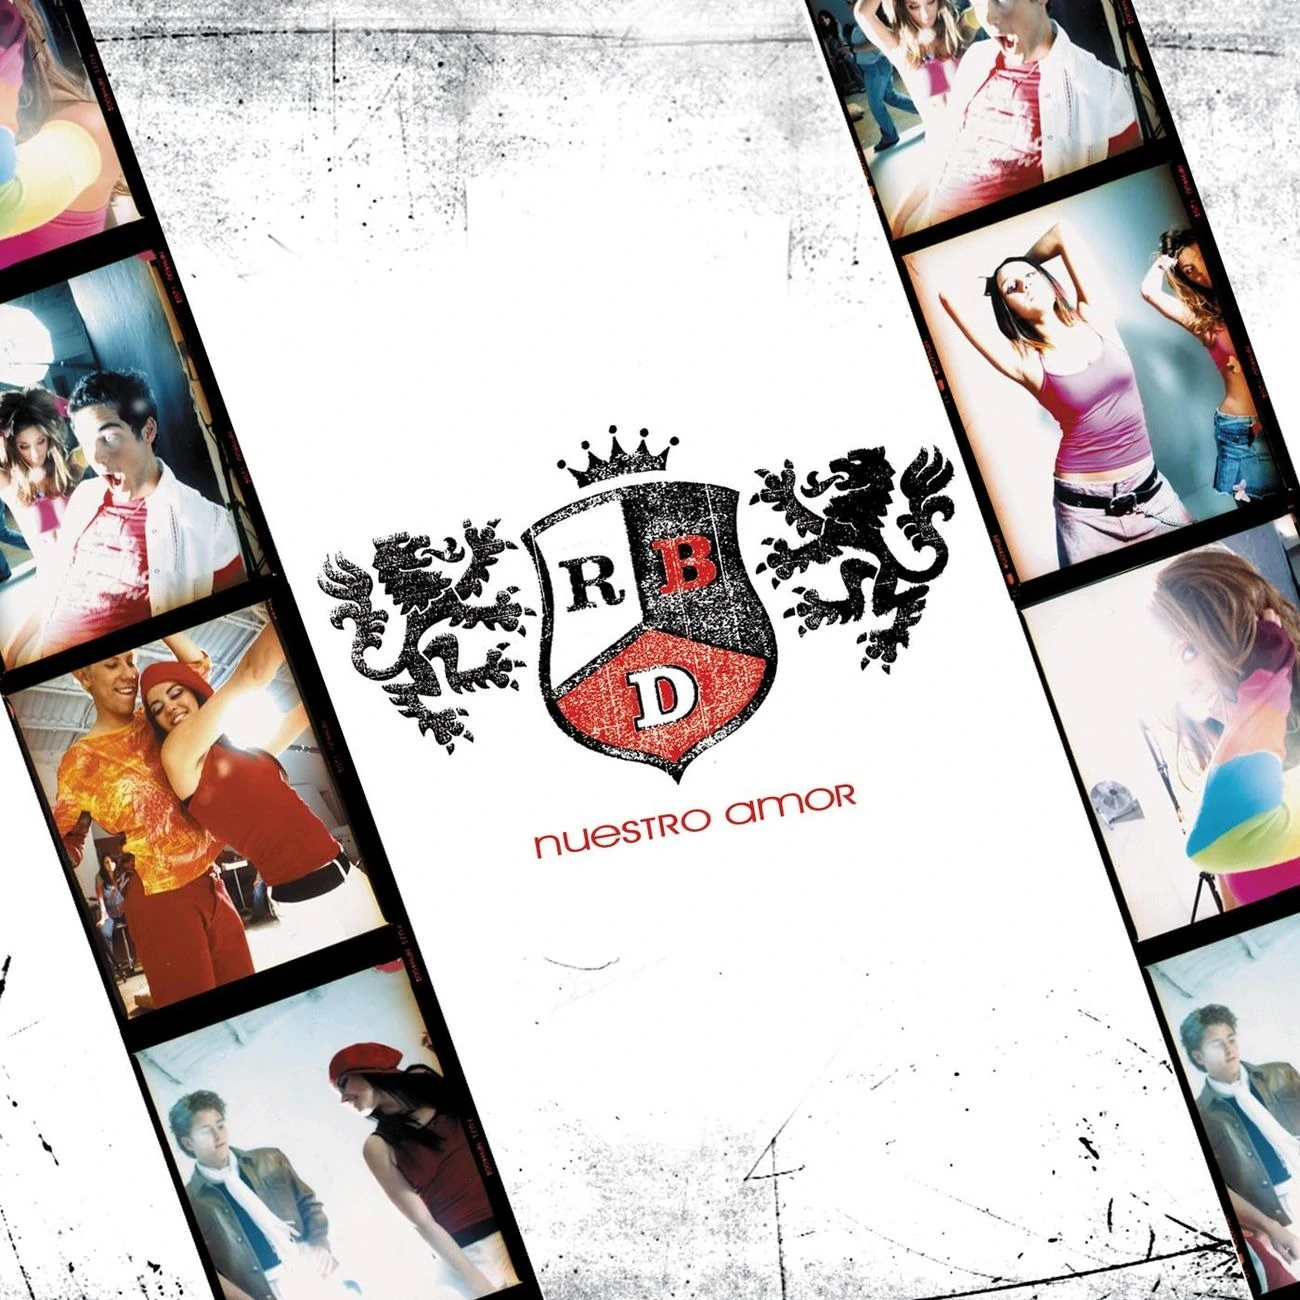 RBD Nuestro Amor cover artwork